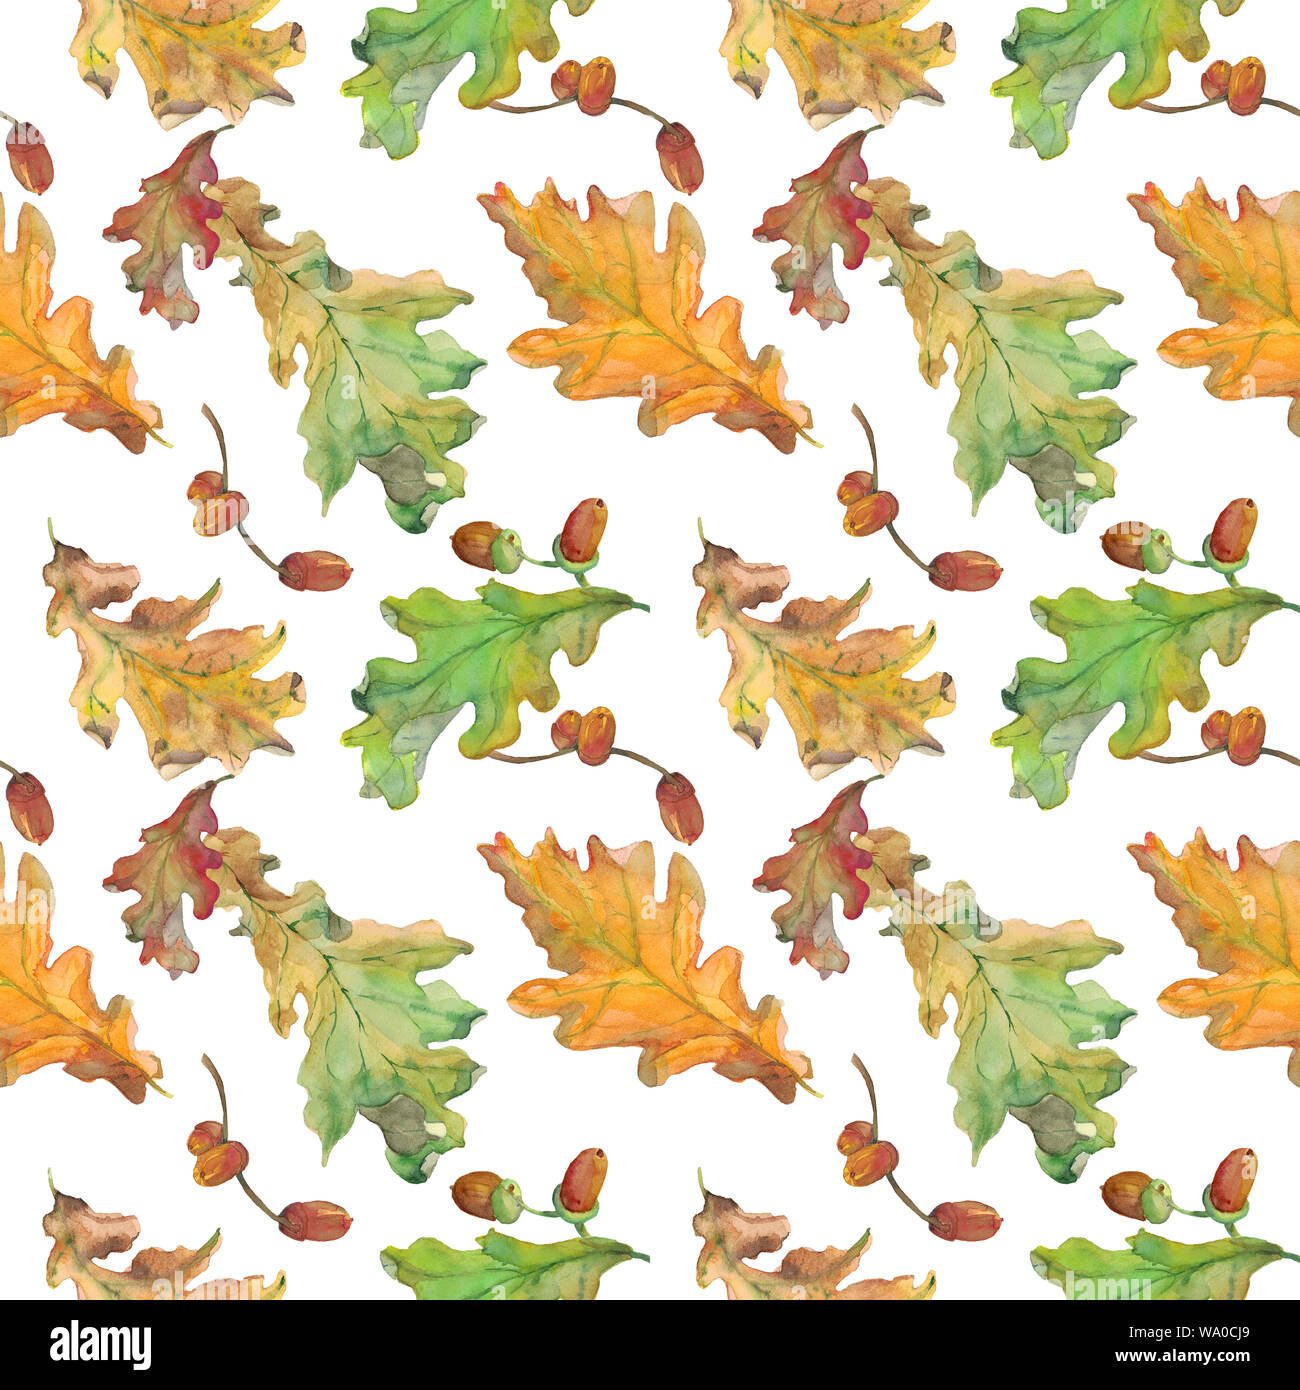 Acquerello disegnato a mano modello senza cuciture con autunno verde e giallo di foglie di quercia e ghiande su sfondo bianco. Design per i tessili, arredamento, imballaggio. Foto Stock